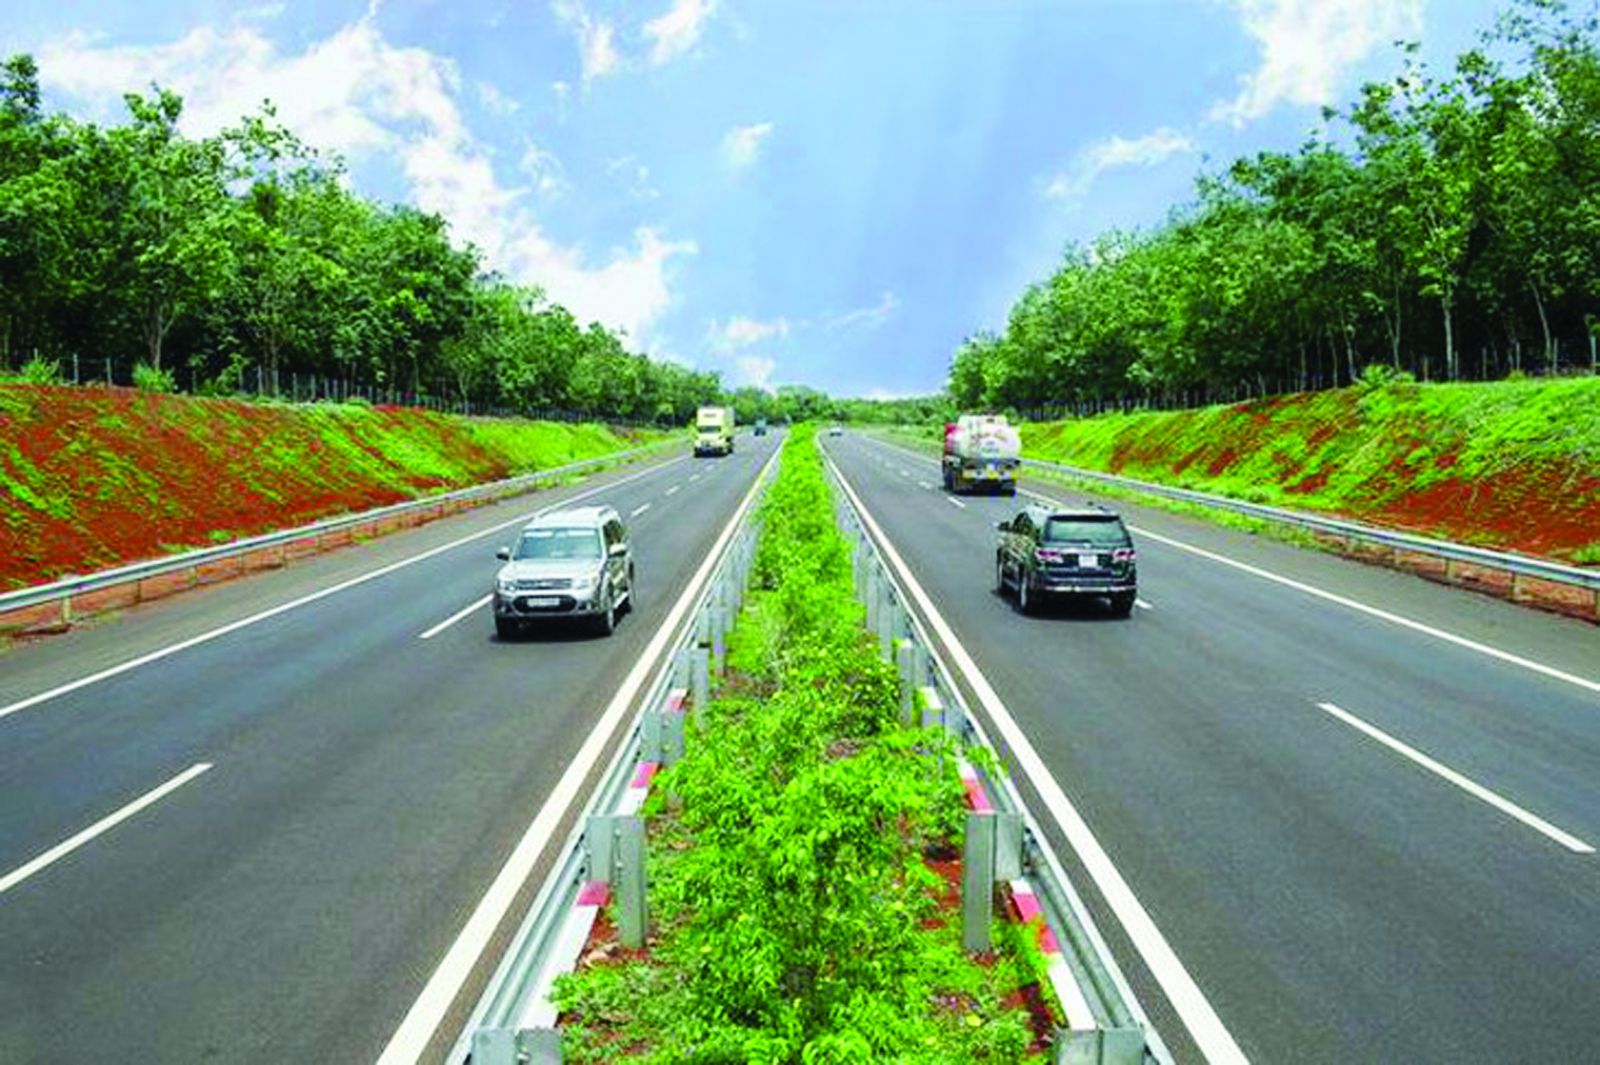 p/HĐND tỉnh Đắk Nông đã ban hành nghị quyết thống nhất thực hiện dự án đường cao tốc Gia Nghĩa (Đắk Nông) - Chơn Thành (Bình Phước) theo hình thức hợp đồng đối tác công tư PPP với tổng mức đầu tư sơ bộ khoảng 19.800 tỷ đồng, thời gian thực hiện dự án trong giai đoạn 2022-2025.